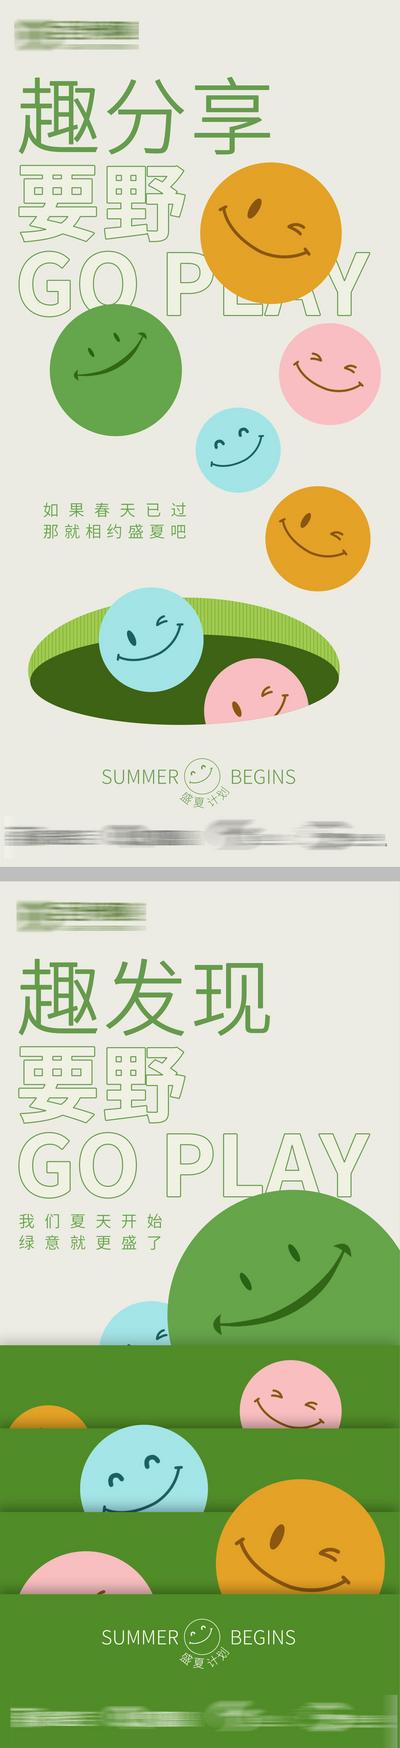 南门网 广告 海报 春天 夏天 活动 表情 趣味 系列